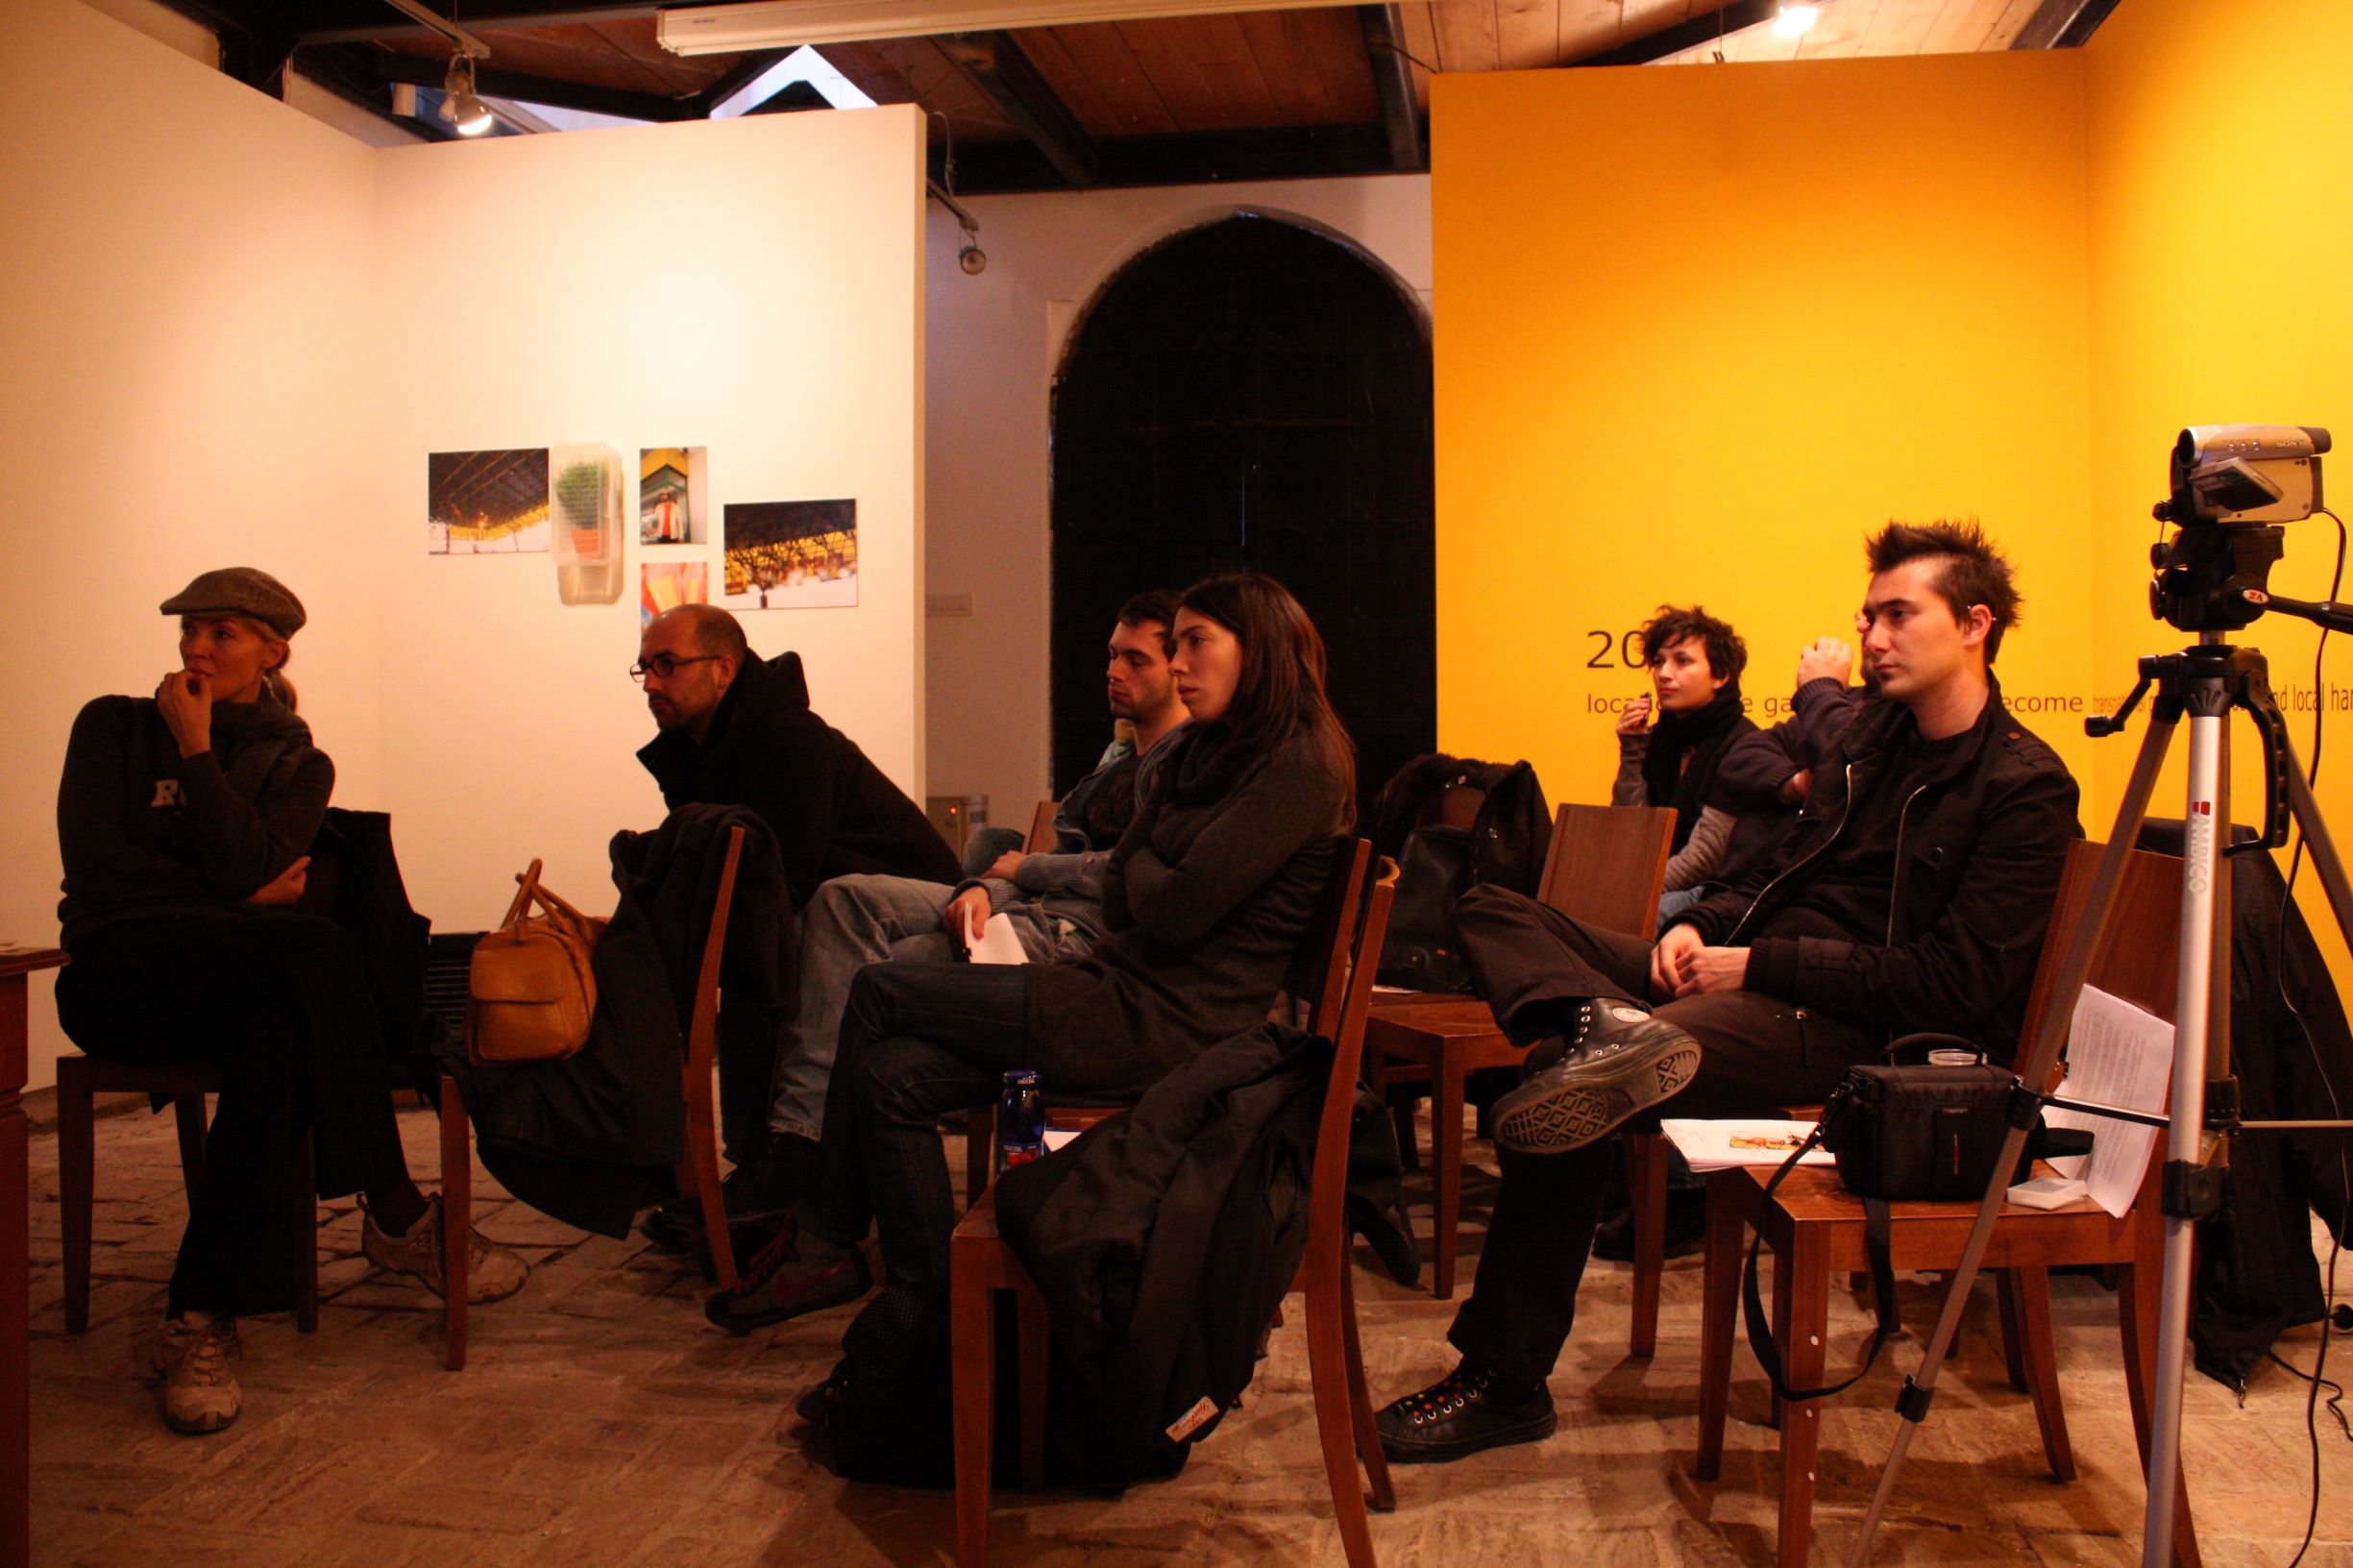 Politics of Contemporary Art: Workshop2 - Politics of Contemporary Art